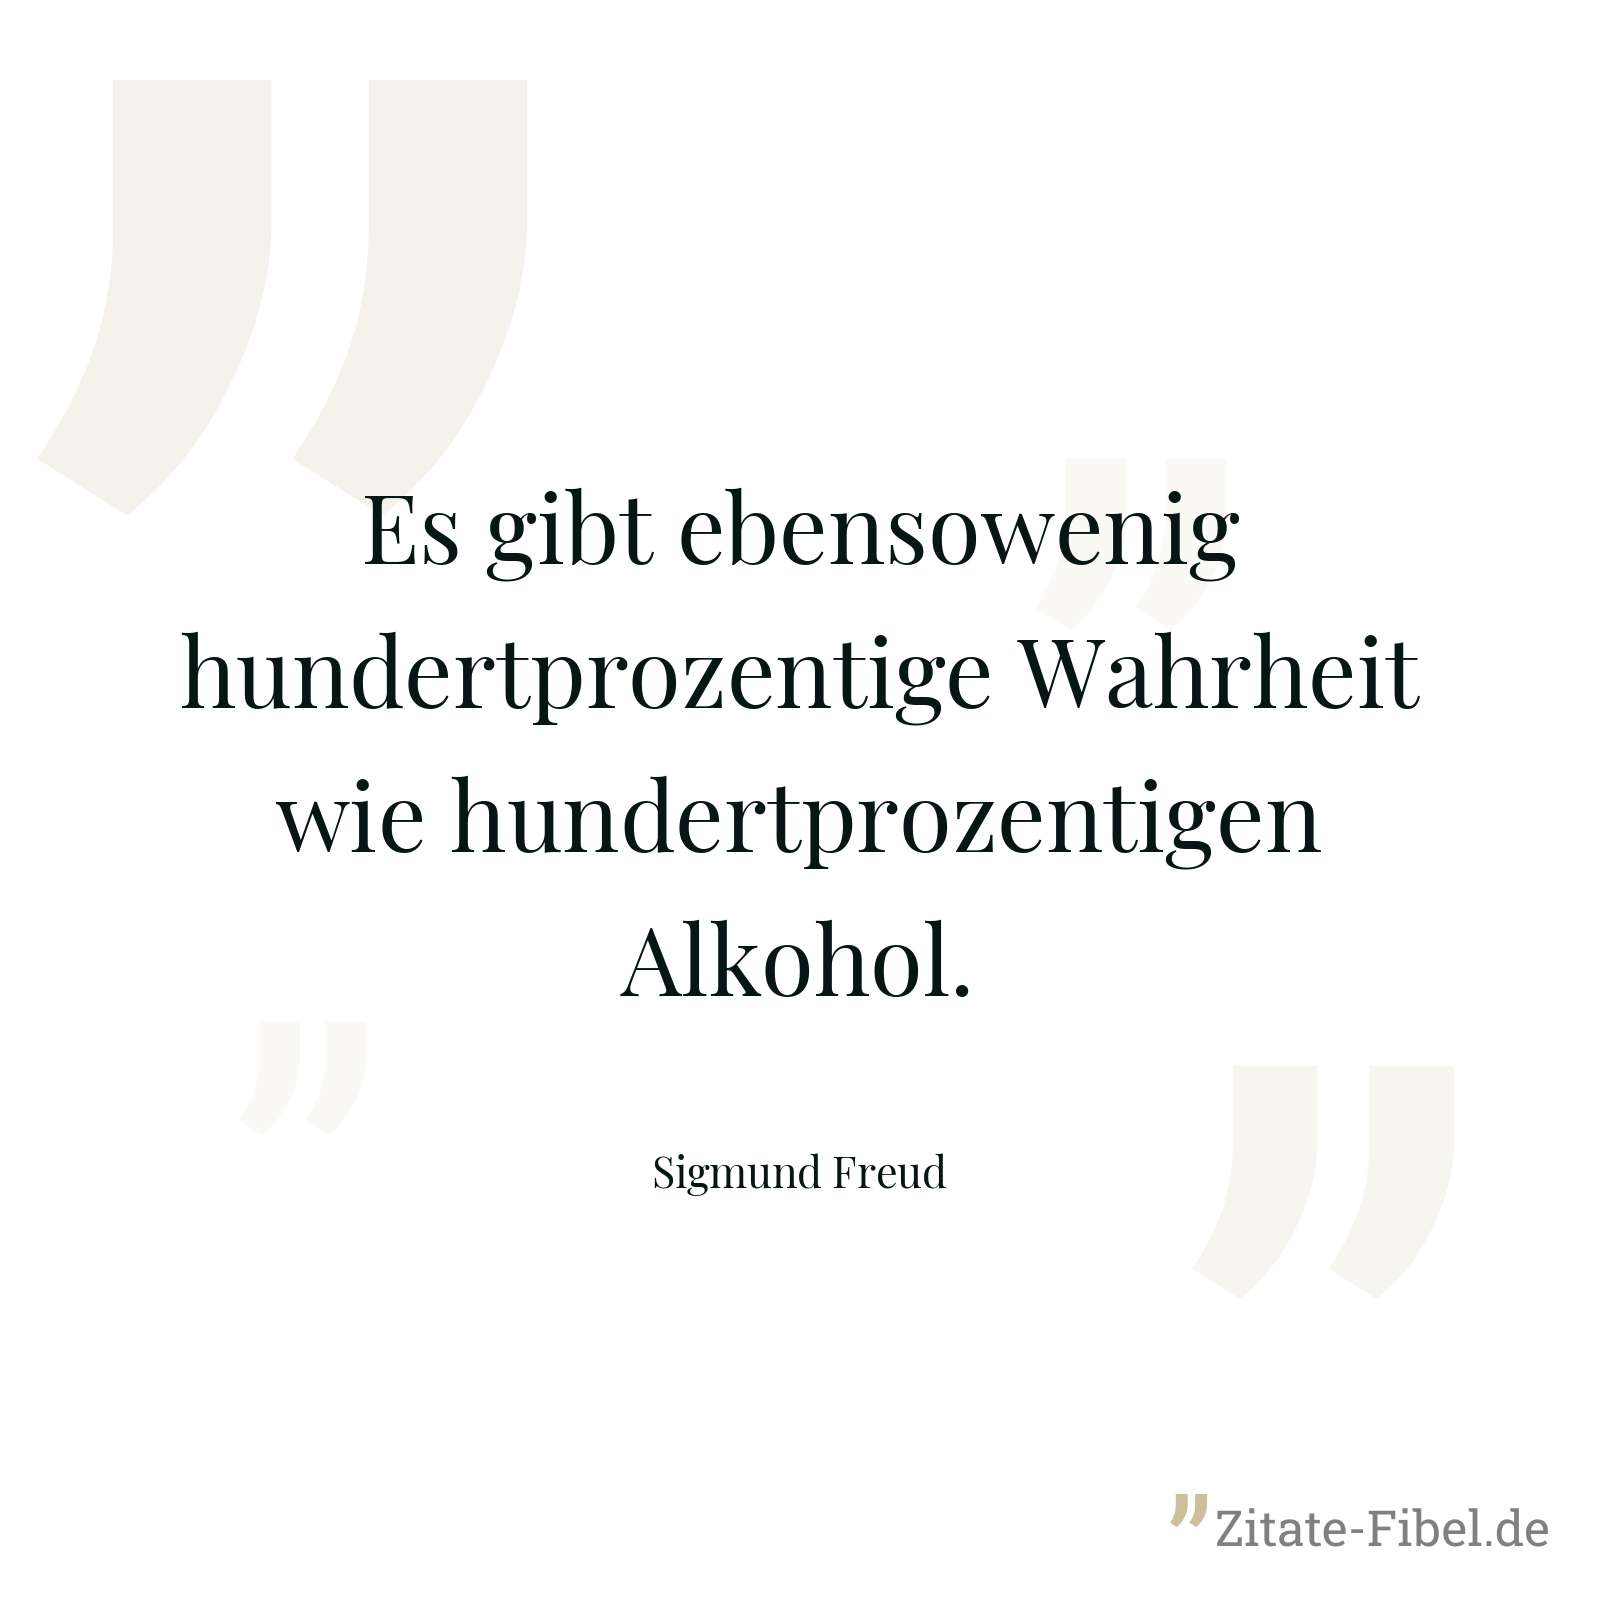 Es gibt ebensowenig hundertprozentige Wahrheit wie hundertprozentigen Alkohol. - Sigmund Freud